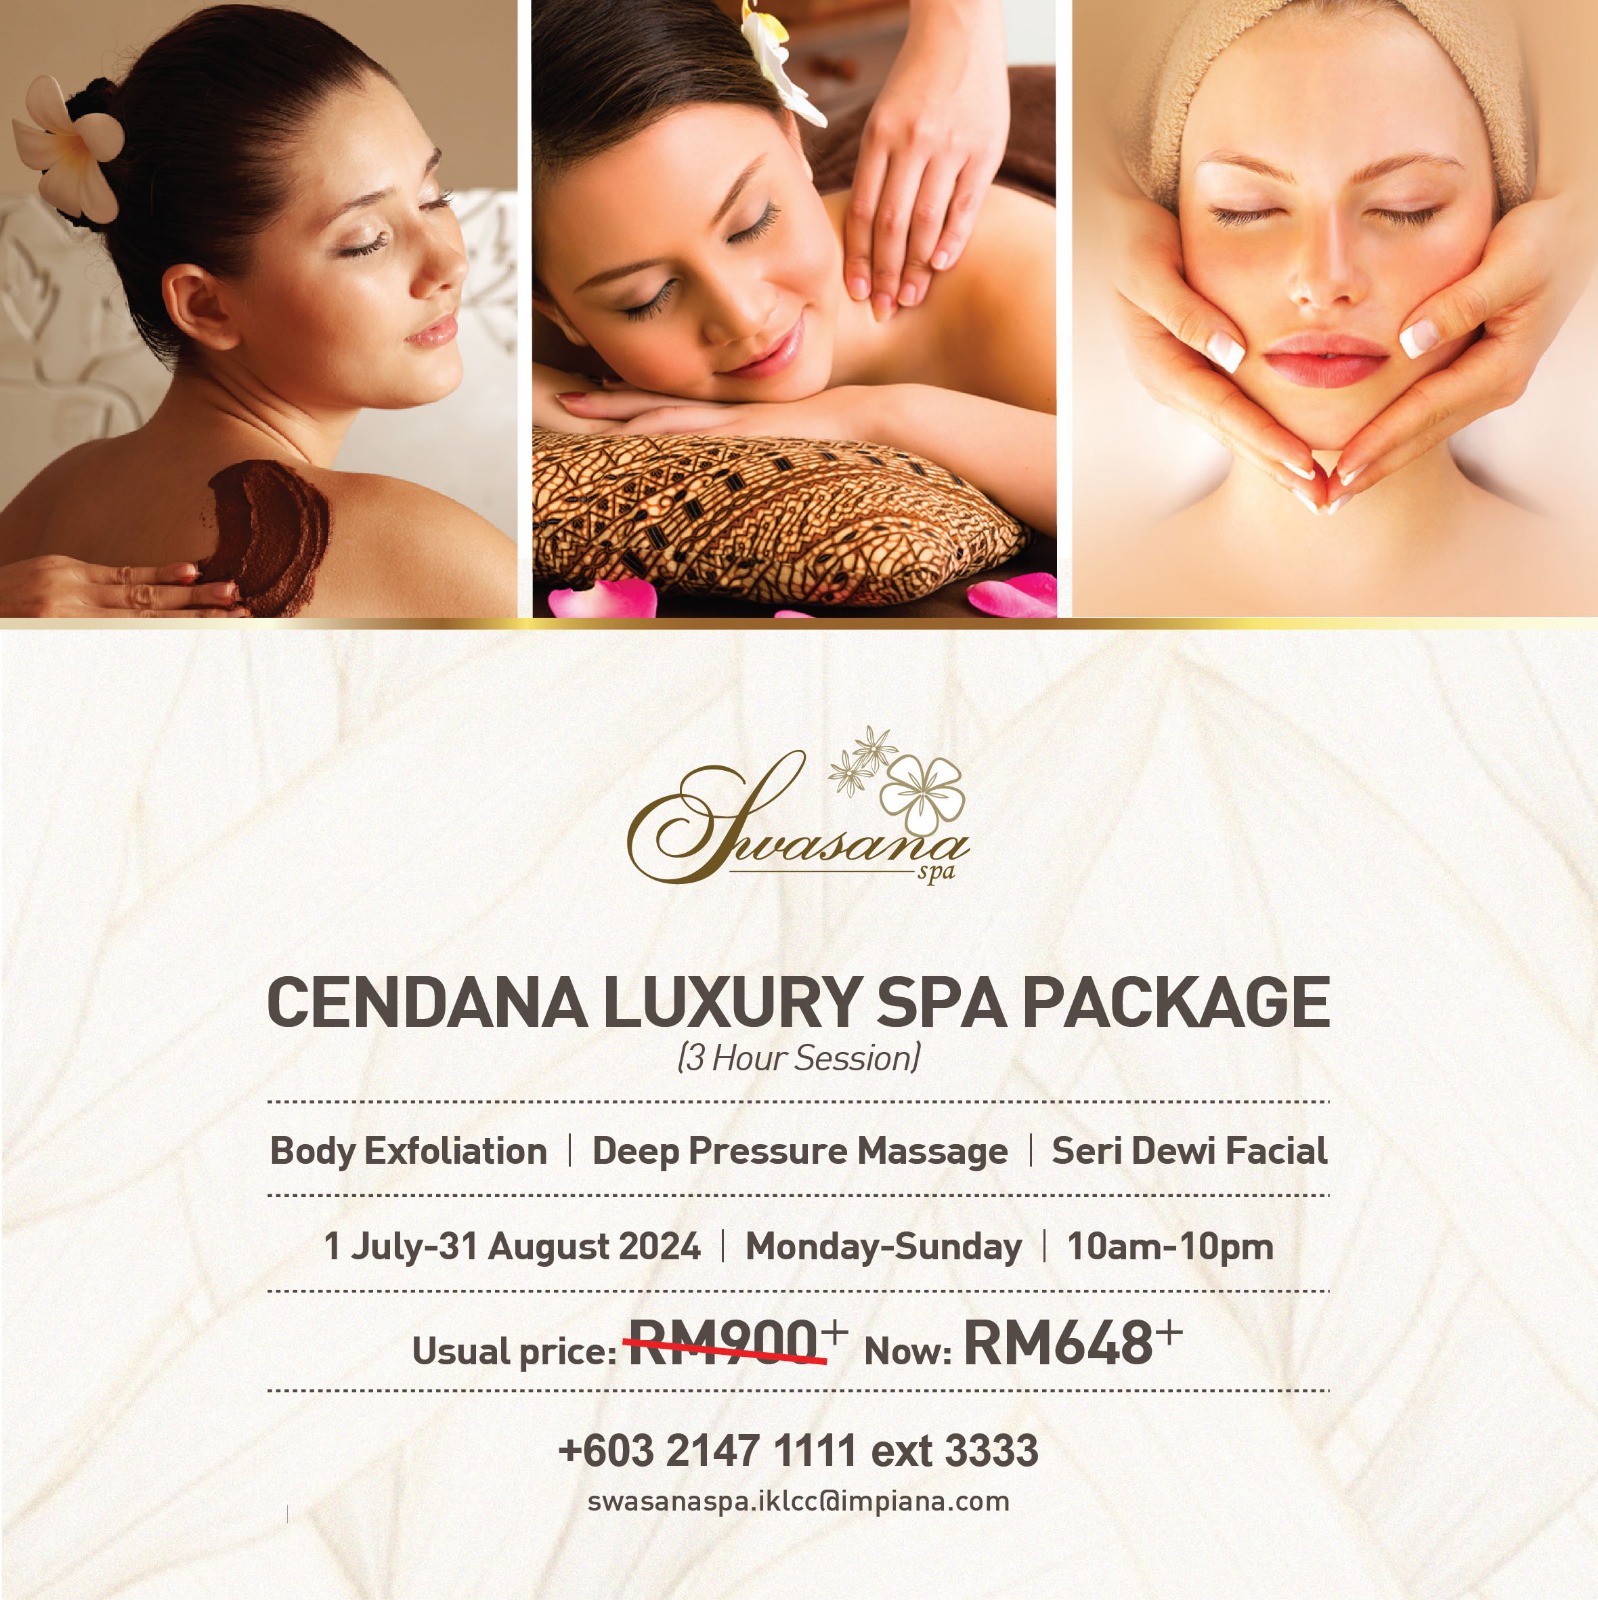 Cendana Luxury Spa at Impiana KLCC Hotel